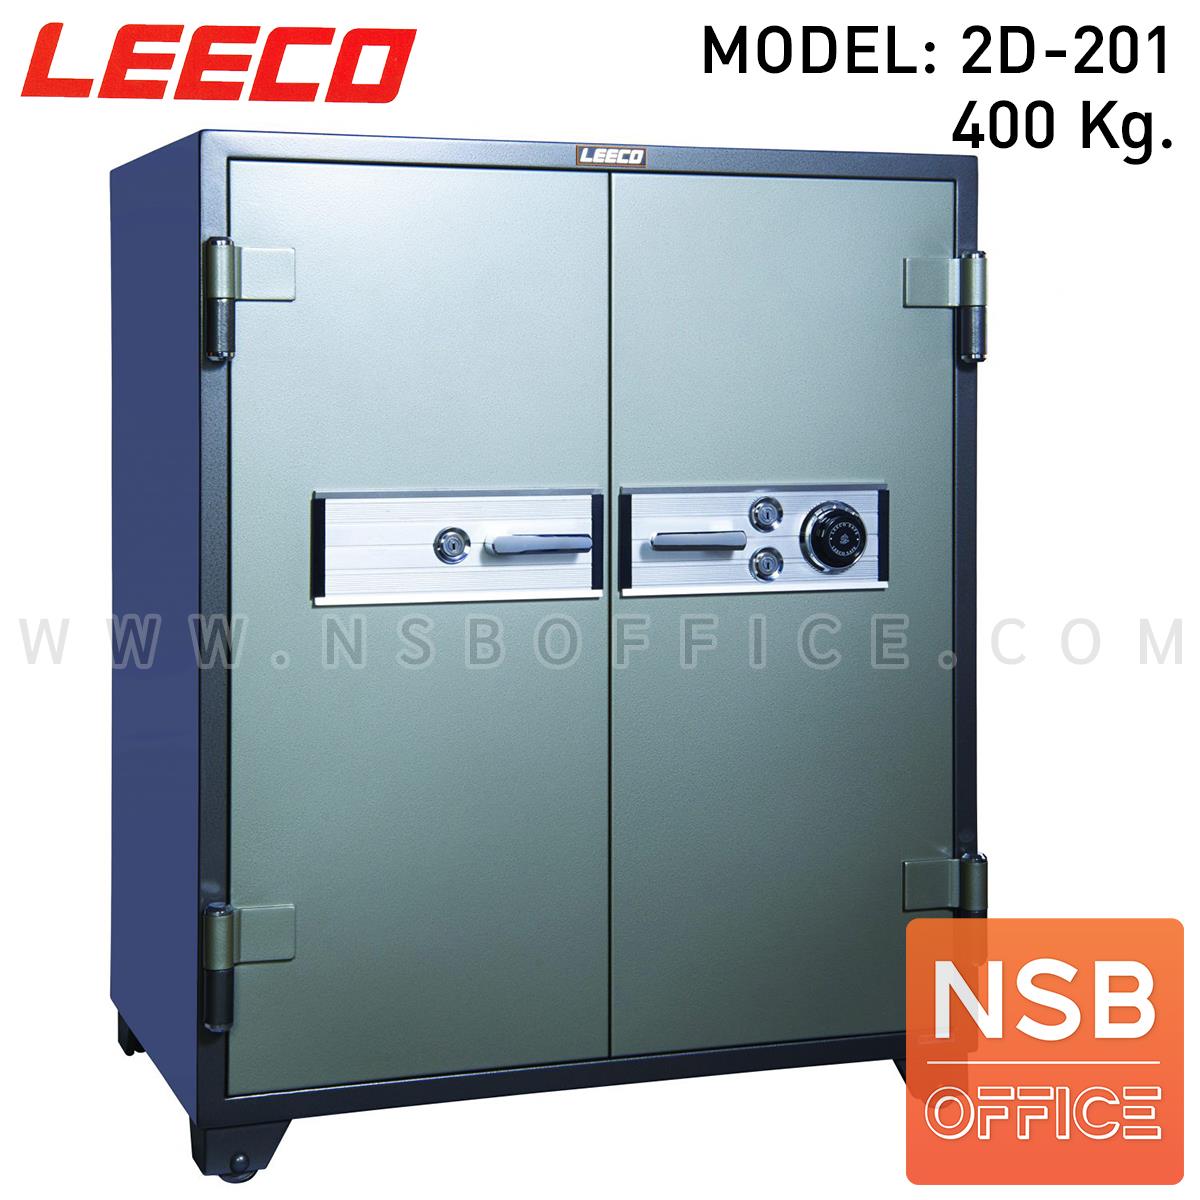 F02A054:ตู้เซฟนิรภัย 2 ประตู น้ำหนัก 400 Kg. ลีโก้ รุ่น LEECO 2D-201 (2 กุญแจ 1 รหัส)   